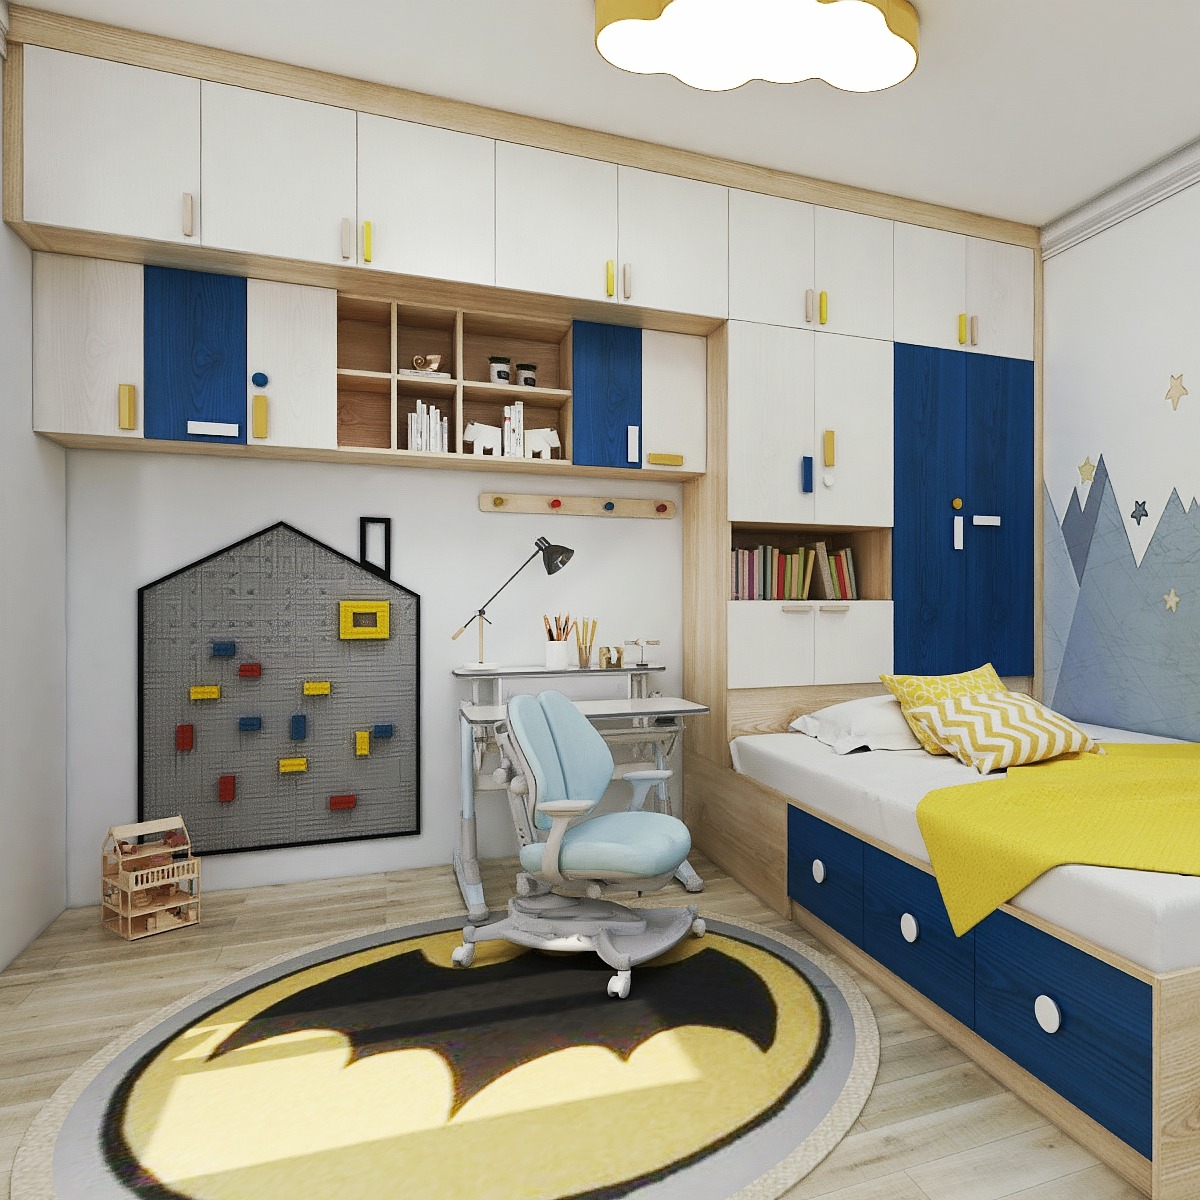 小面积儿童房如何布局优沃儿童家具 设计师说: 小面积房间布置zui应该